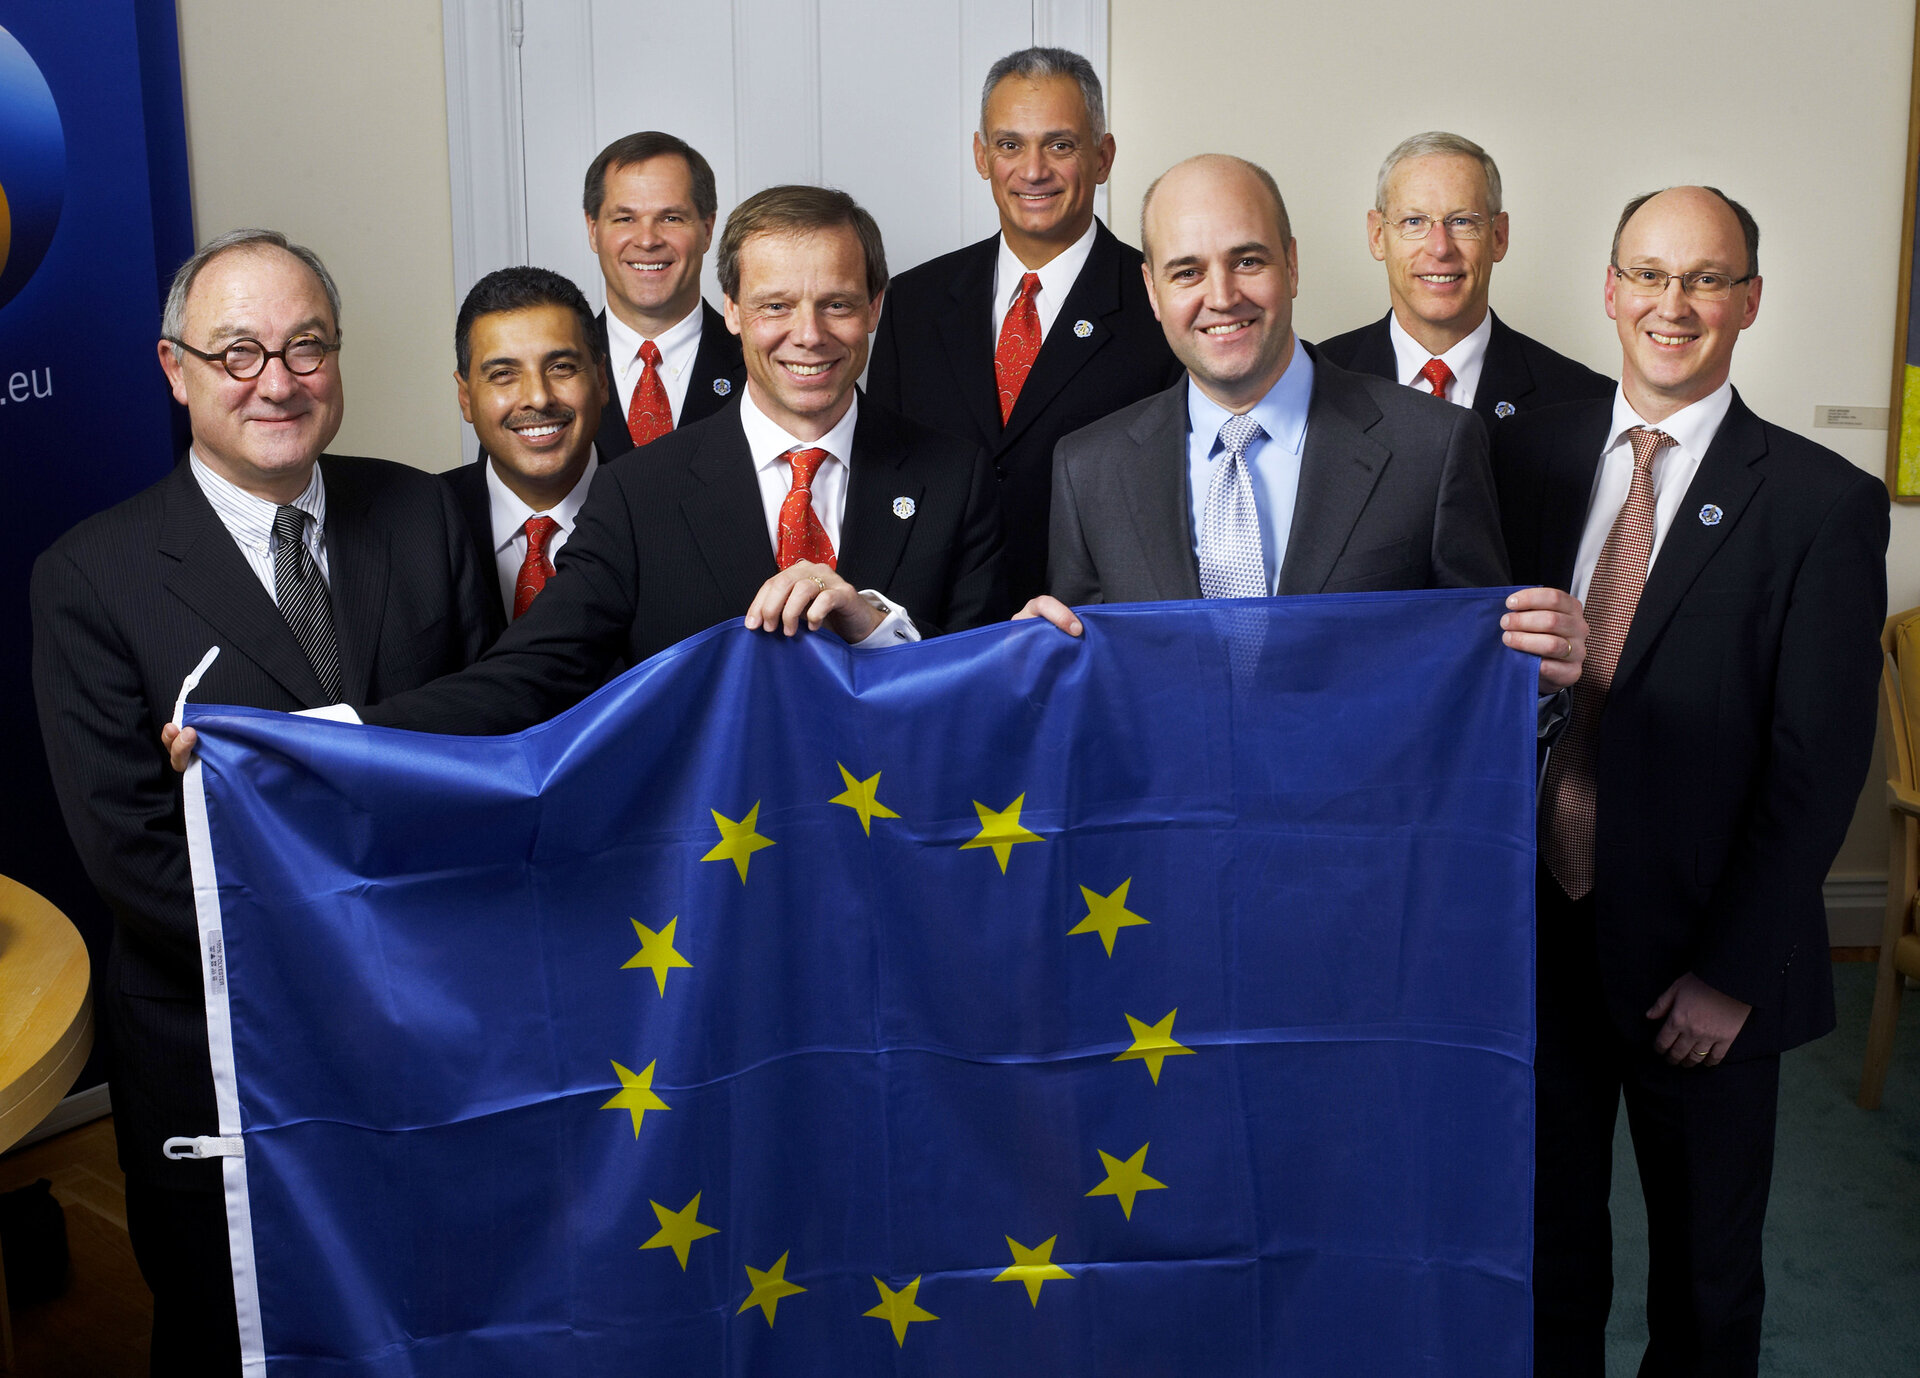 European union flag returns home